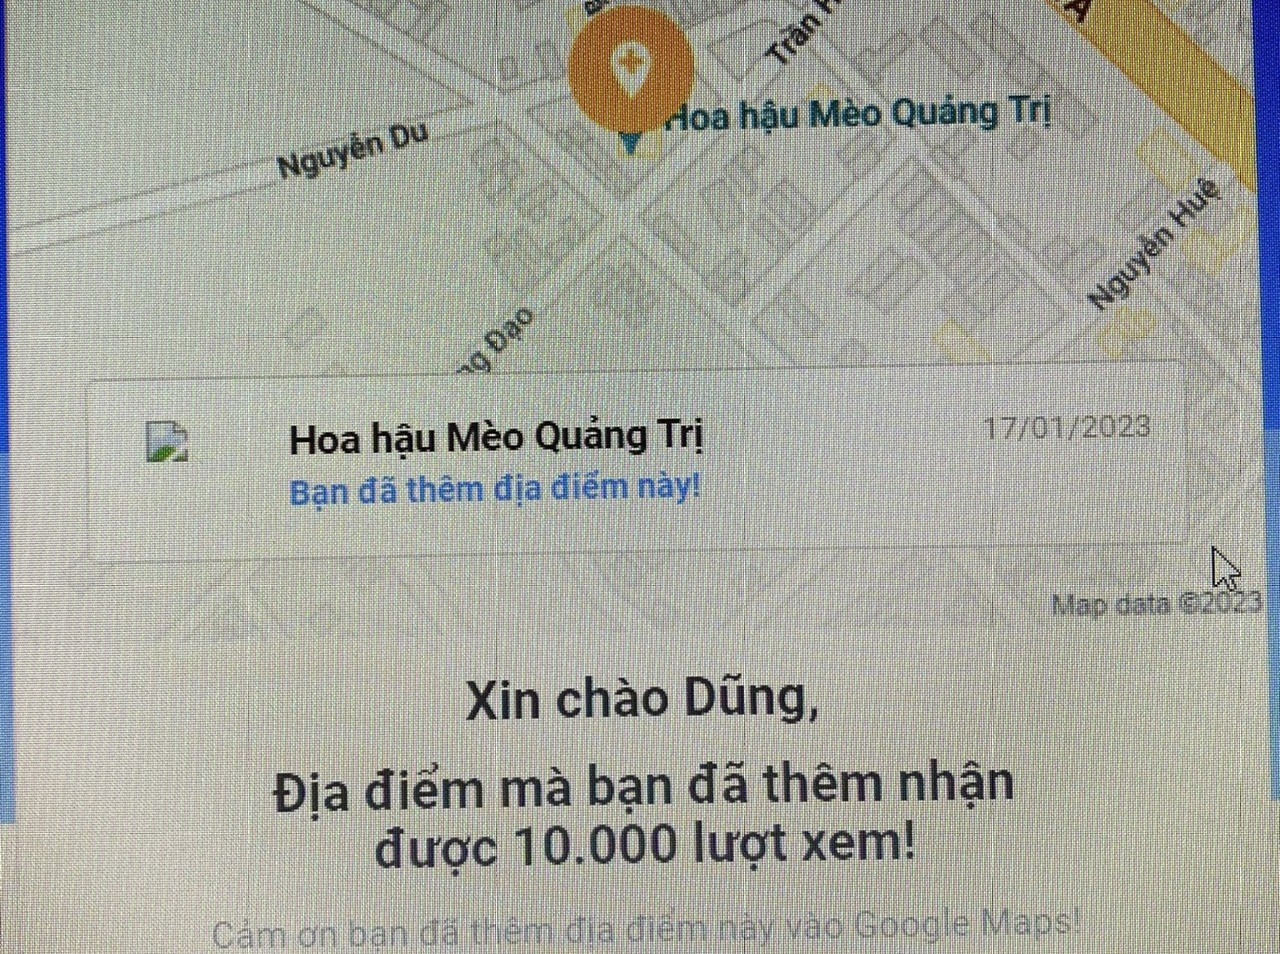 Địa điểm đặt linh vật mèo ở huyện Triệu Phong được nhiều người tìm kiếm qua google maps. Ảnh: Sỹ Dũng.